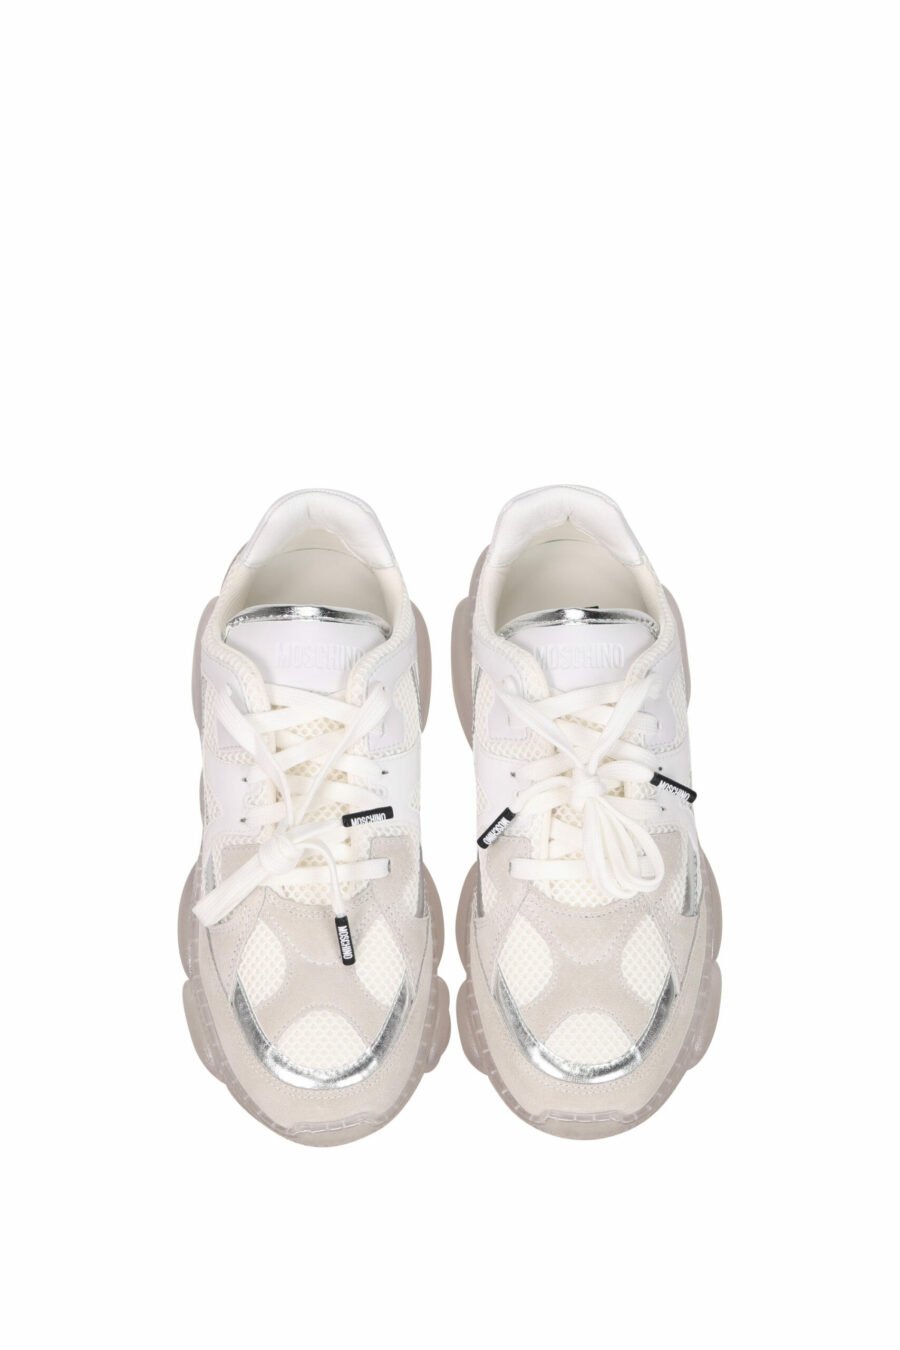 Zapatillas blancas mix "orso35" con suela transparente y logo - 8054388533447 4 scaled